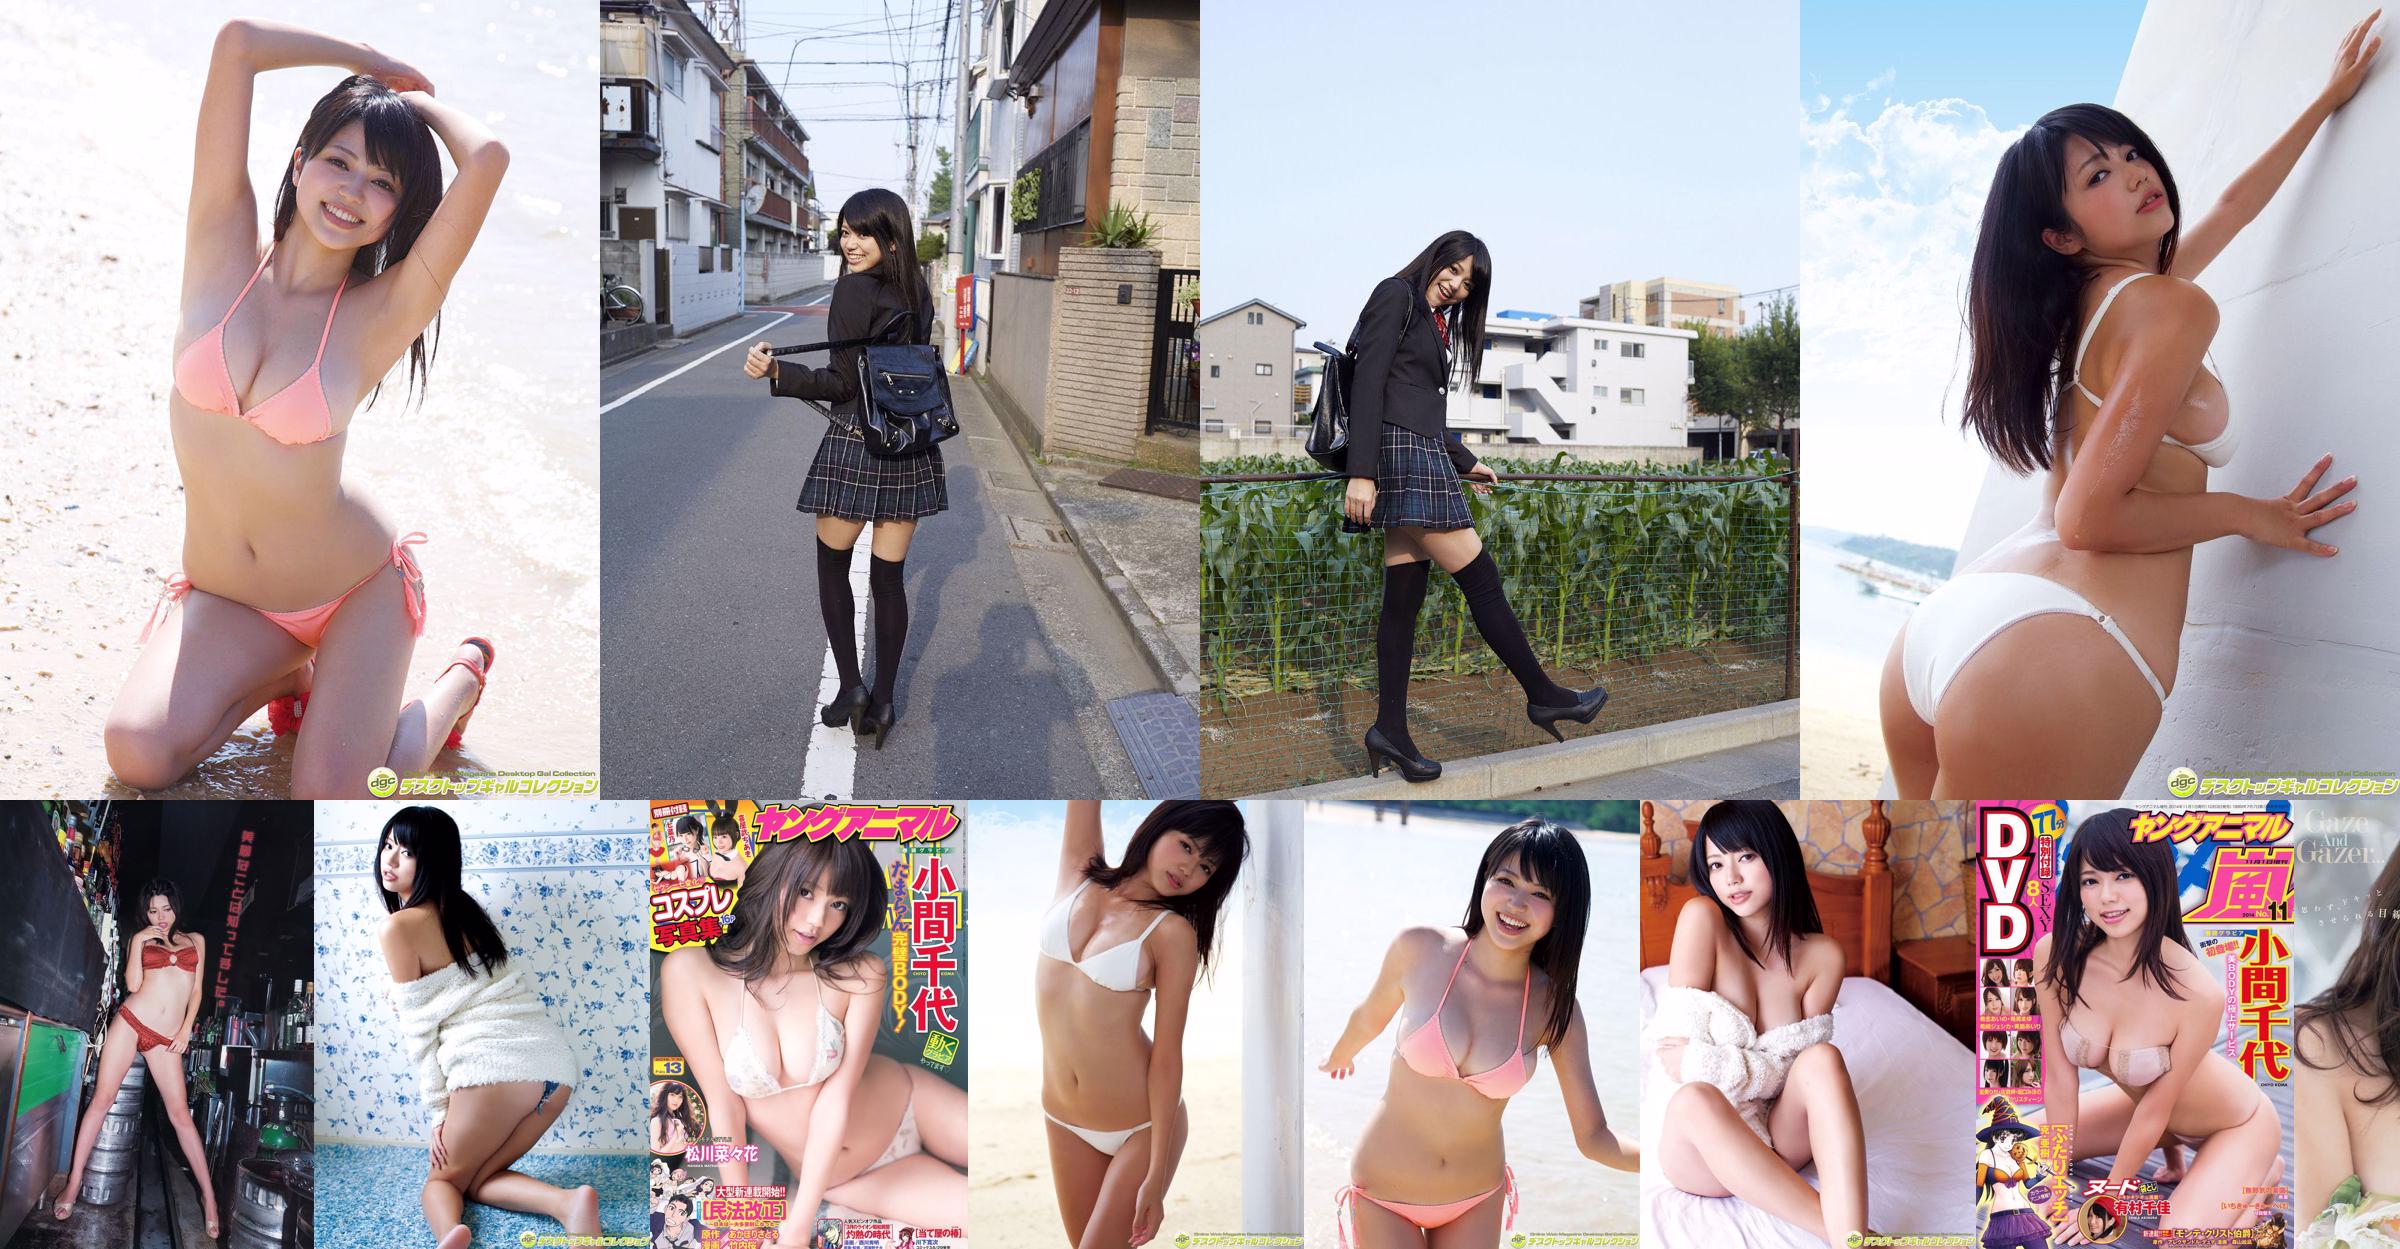 Chiyo Koma [Numero speciale di Young Animal Arashi] Rivista fotografica n. 11 2014 No.3786d9 Pagina 1